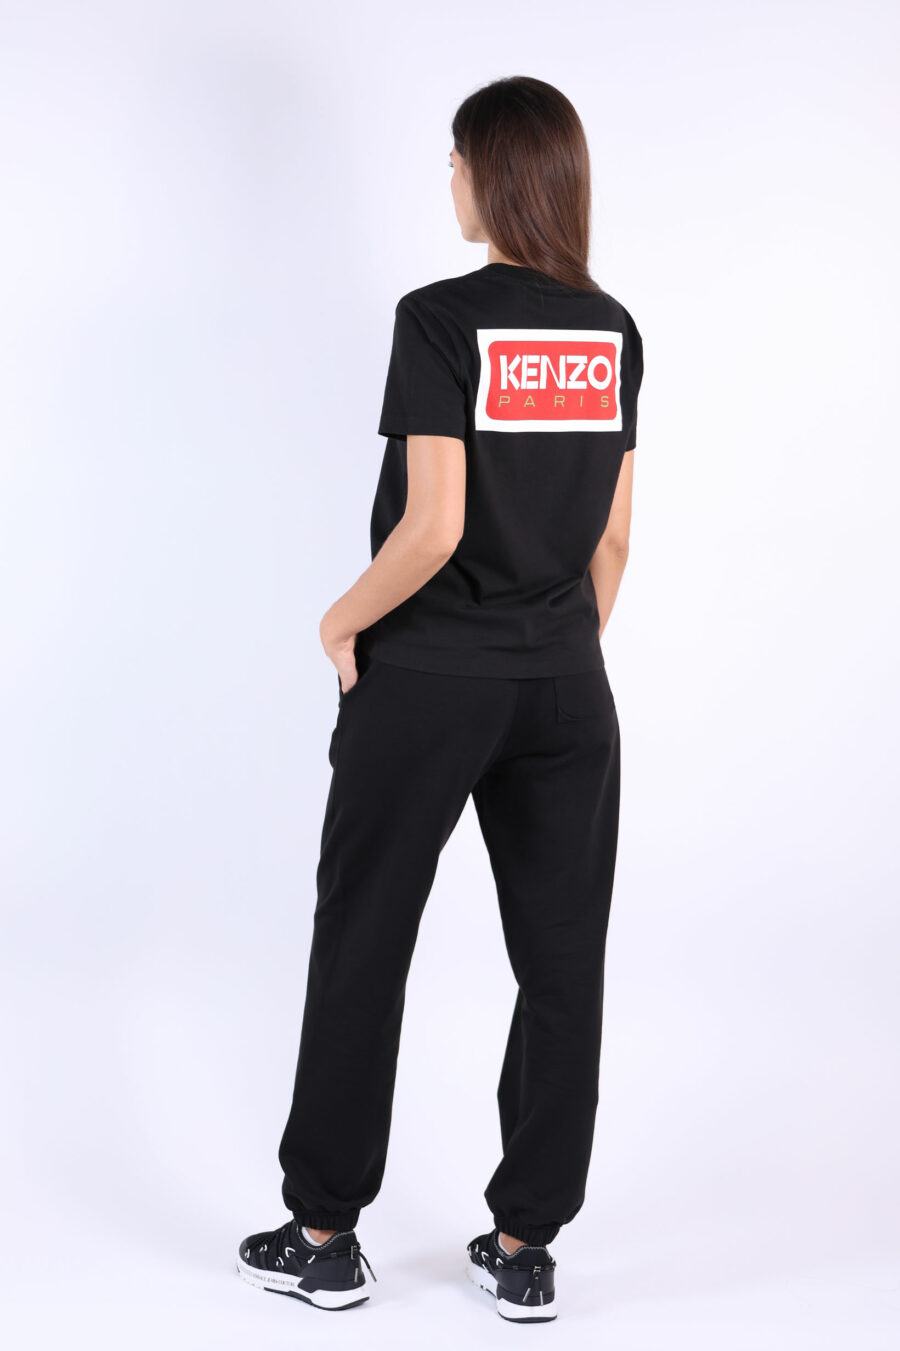 T-shirt preta de tamanho grande com o logótipo "kenzo paris" - 3612230514959 4